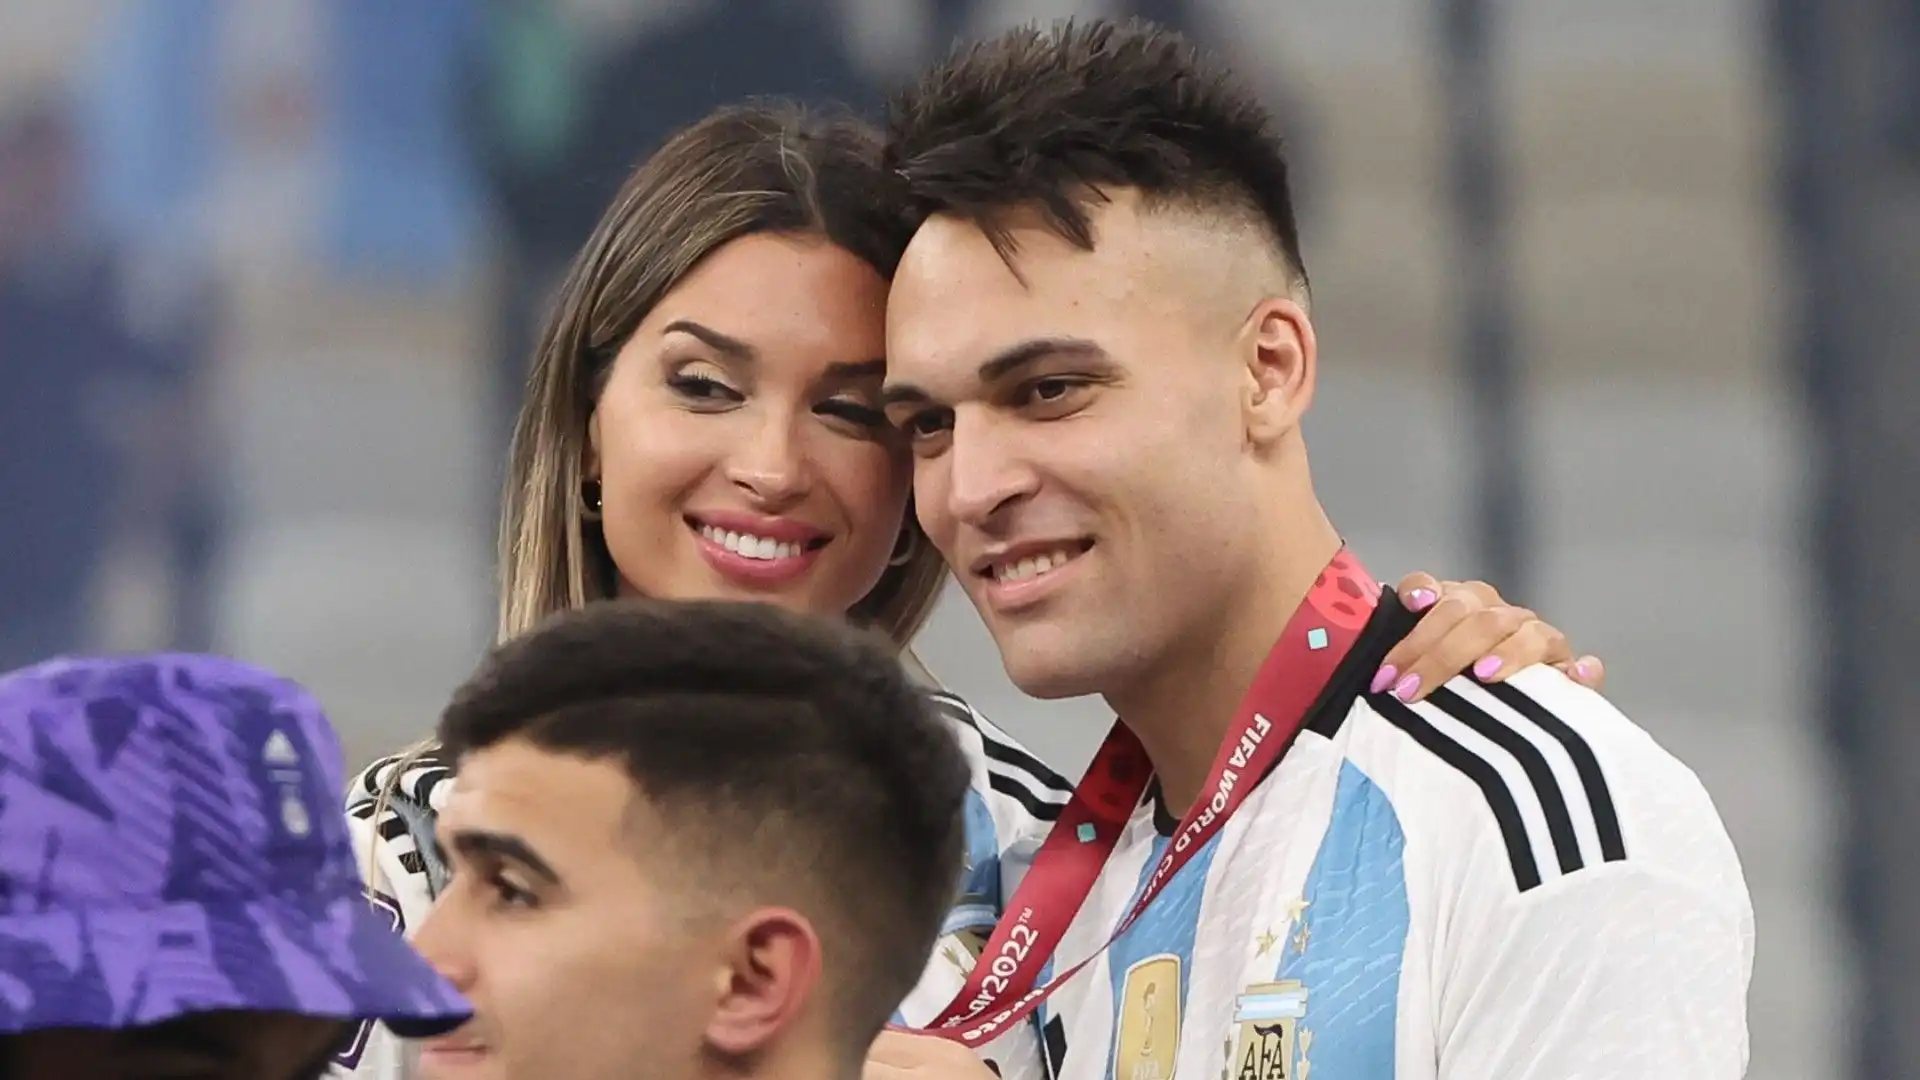 In foto i due innamorati durante i festeggiamenti per il trionfo dell'Argentina ai Mondiali in Qatar